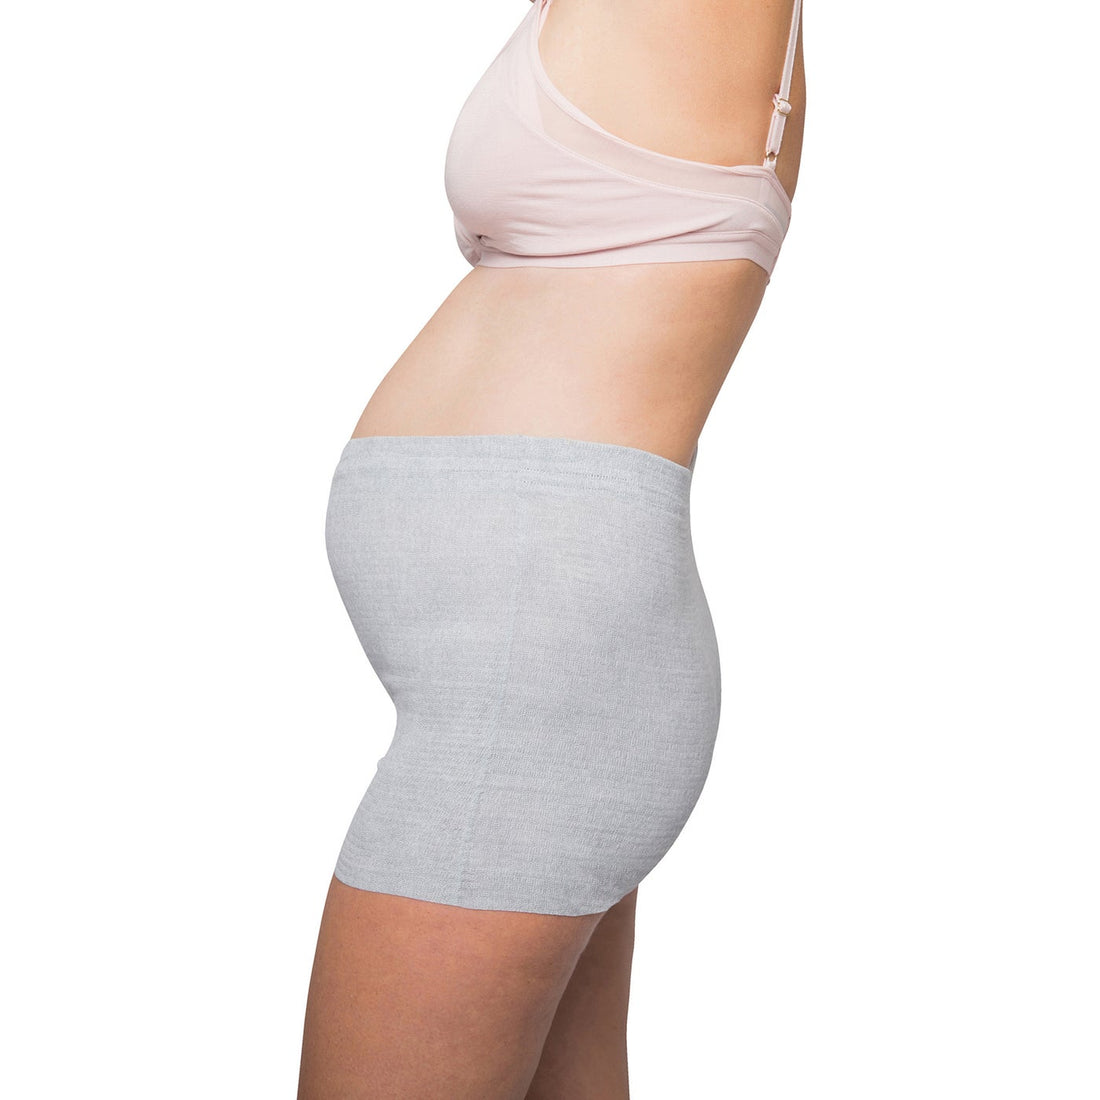 Disposable Underwear -Boyshort Disposable Postpartum Underwear (8 Pack)